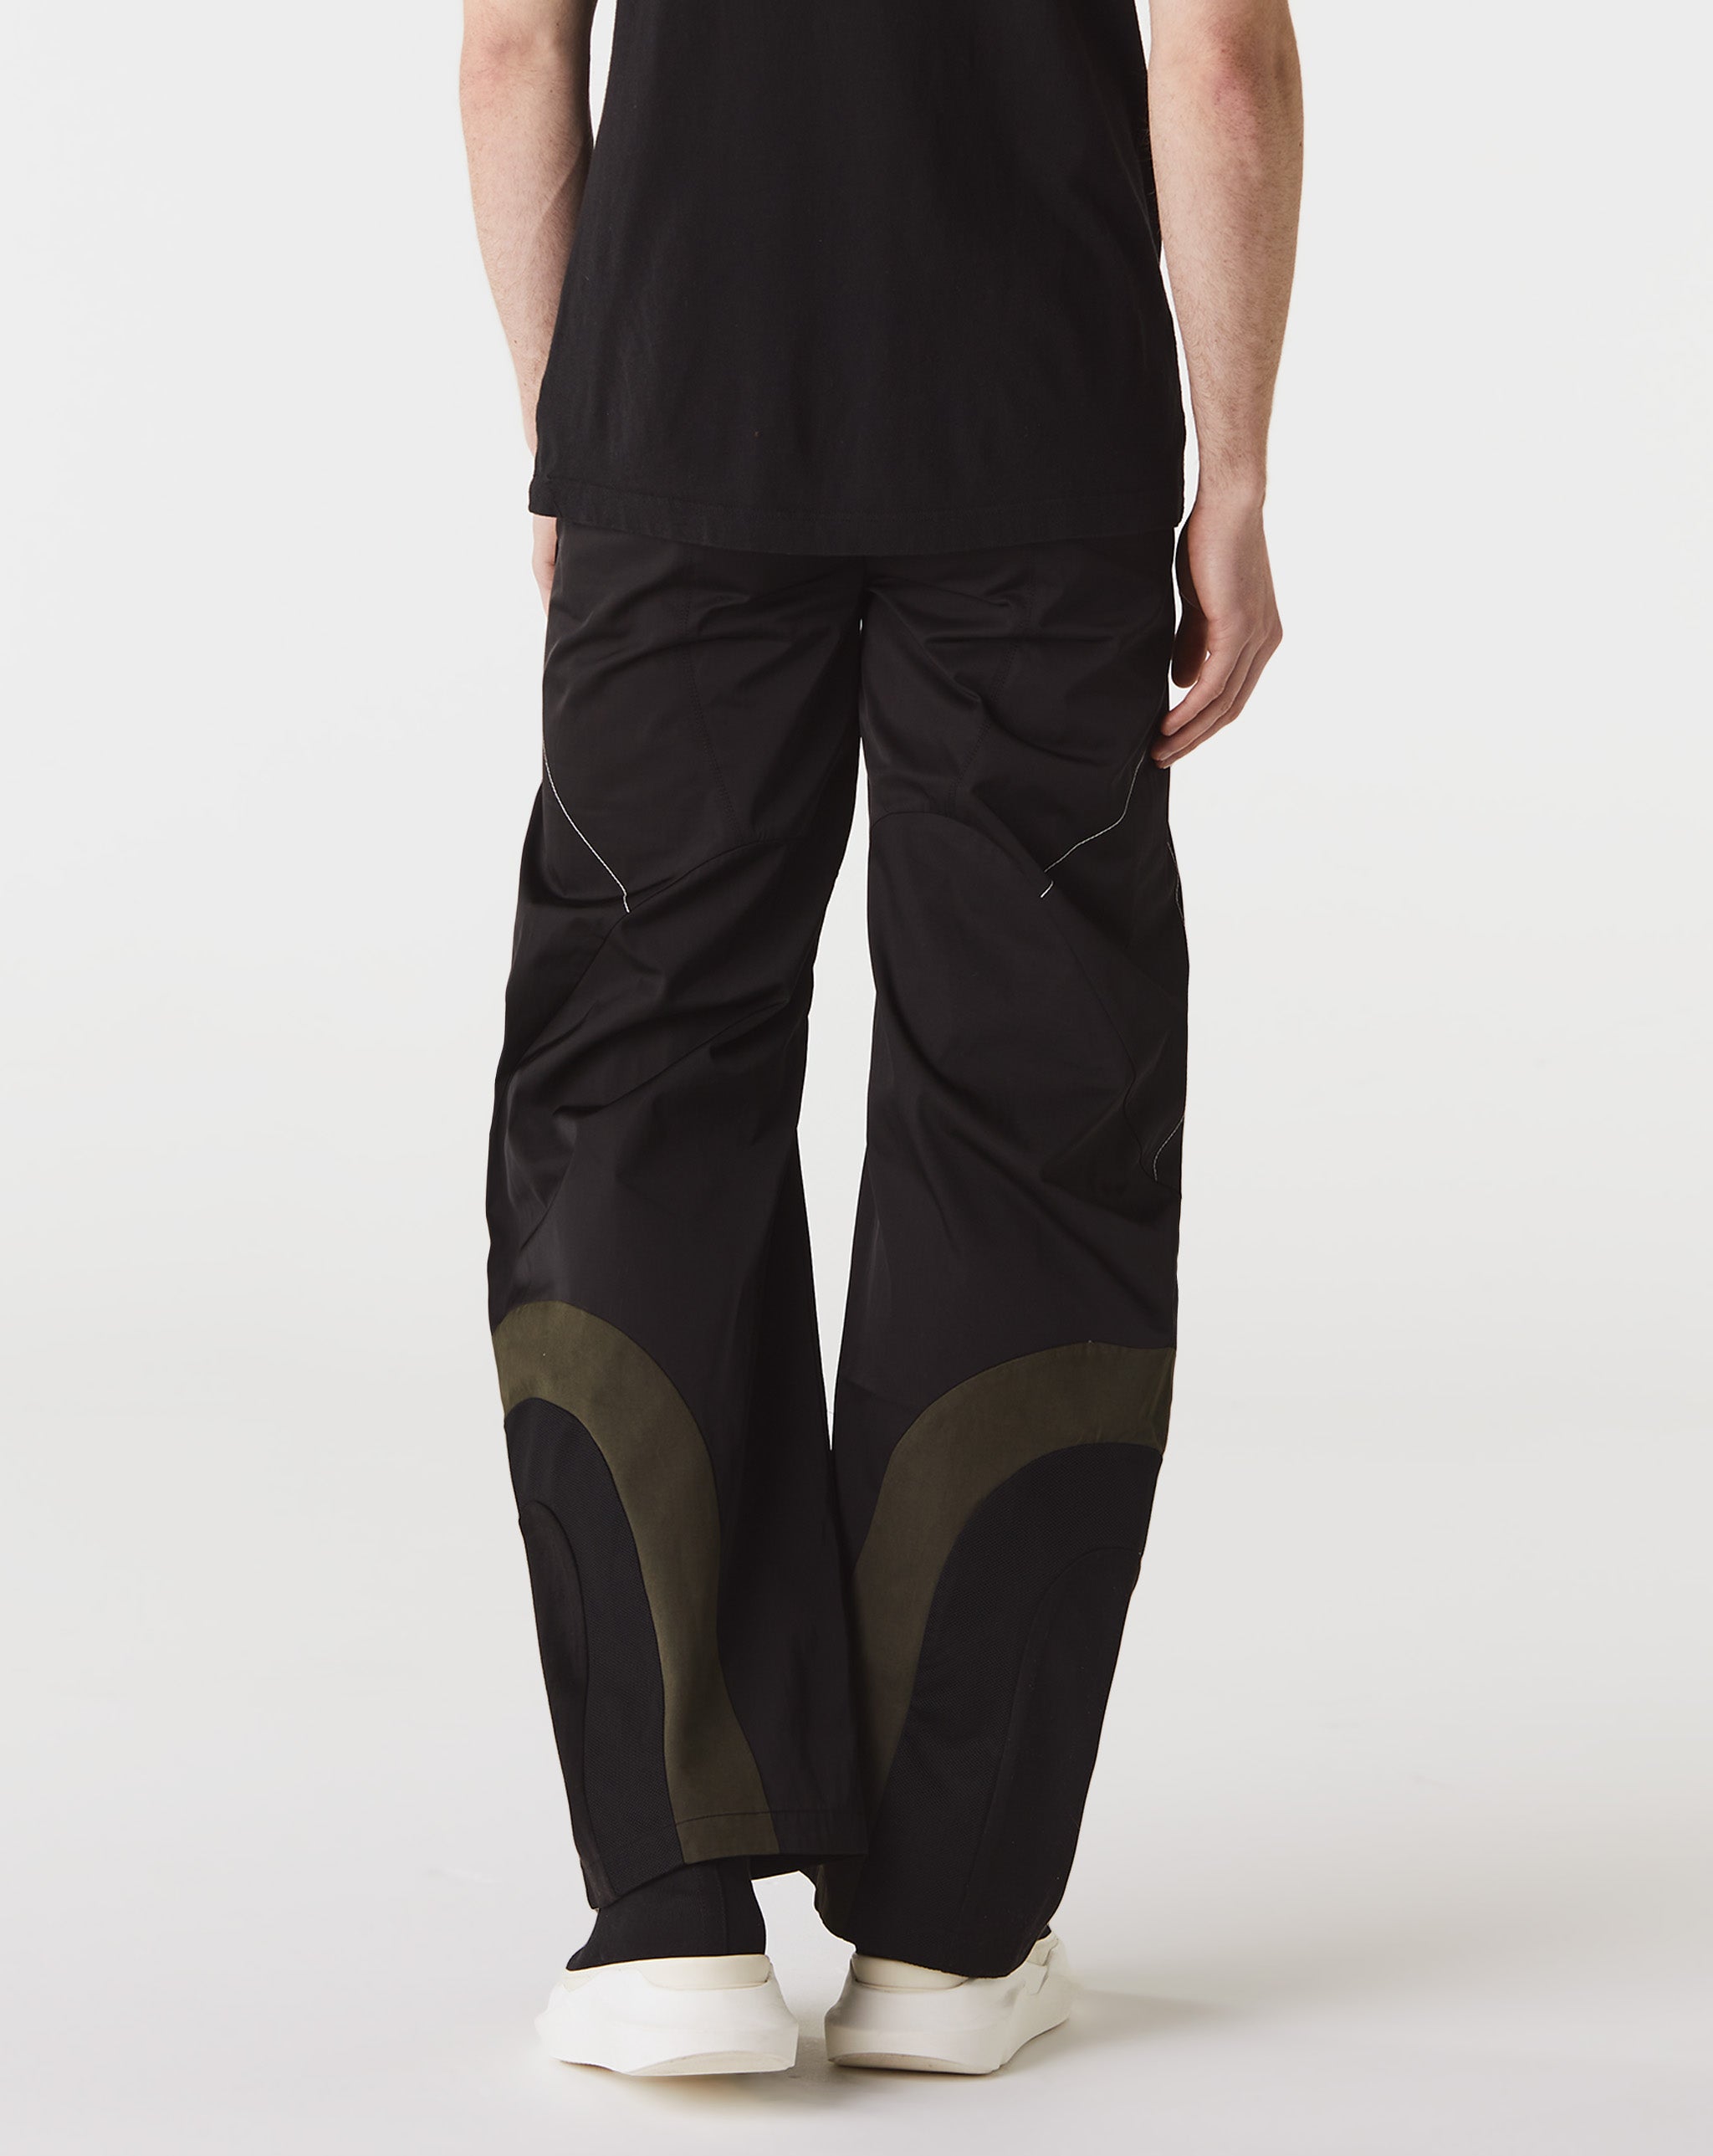 FFFPOSTALSERVICE Articulated Waist Bag Trousers V1  - Cheap Urlfreeze Jordan outlet